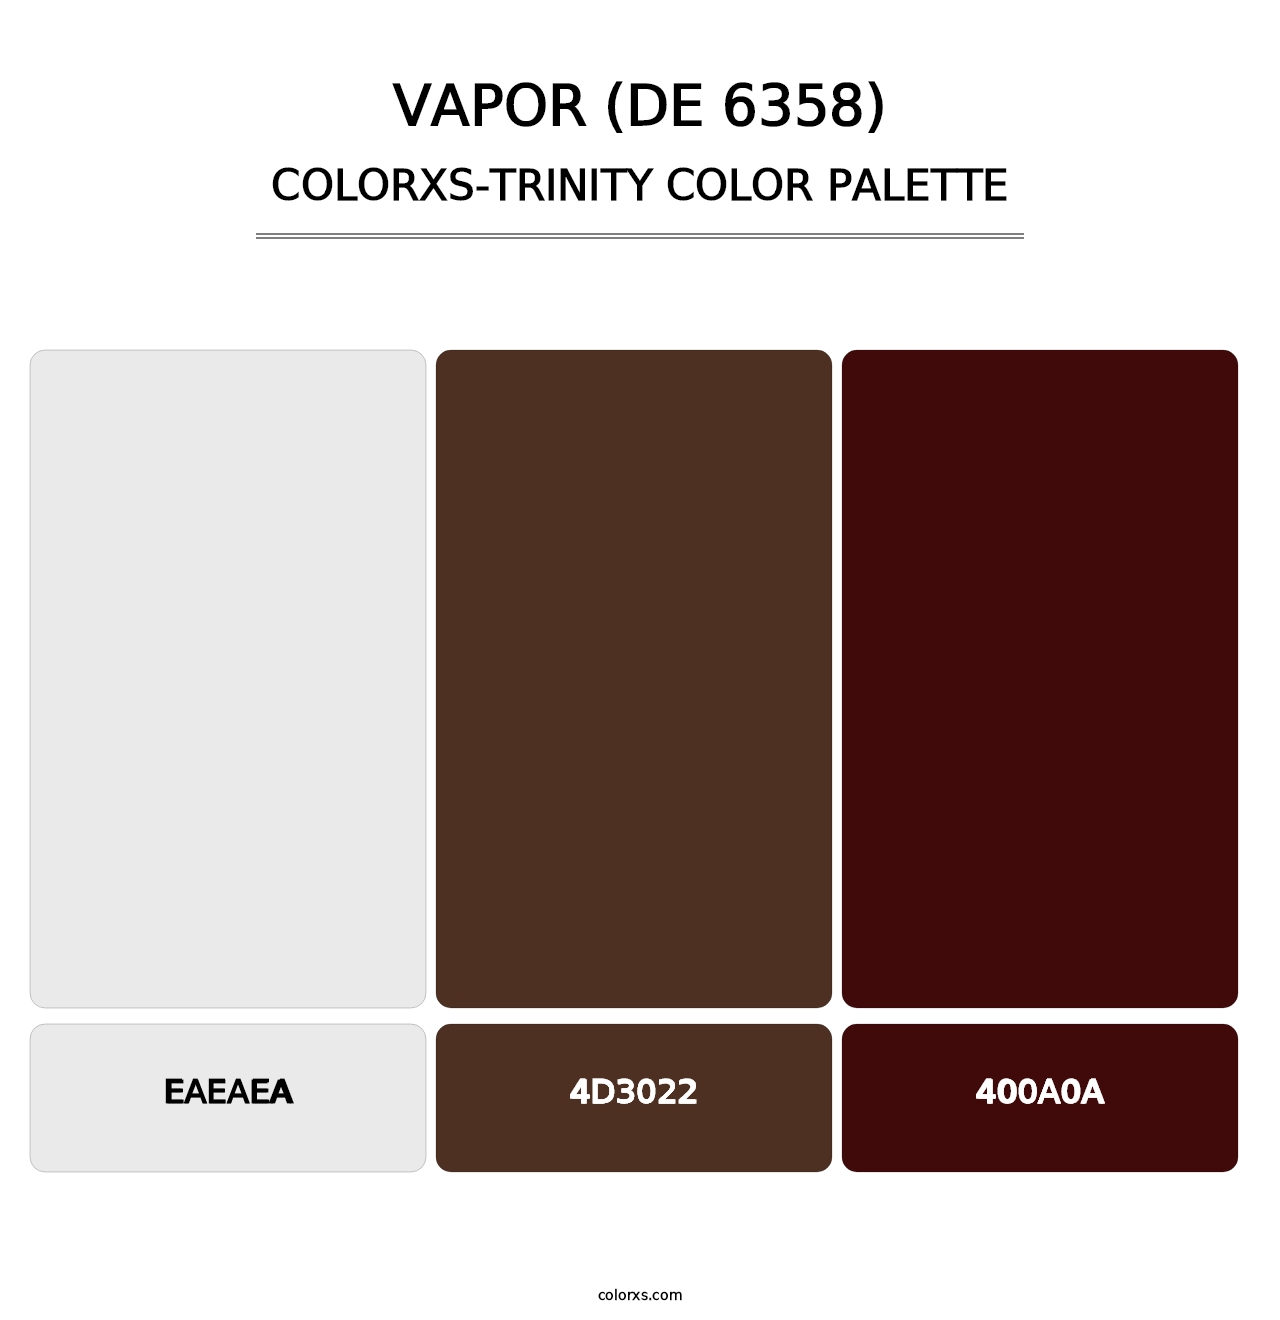 Vapor (DE 6358) - Colorxs Trinity Palette